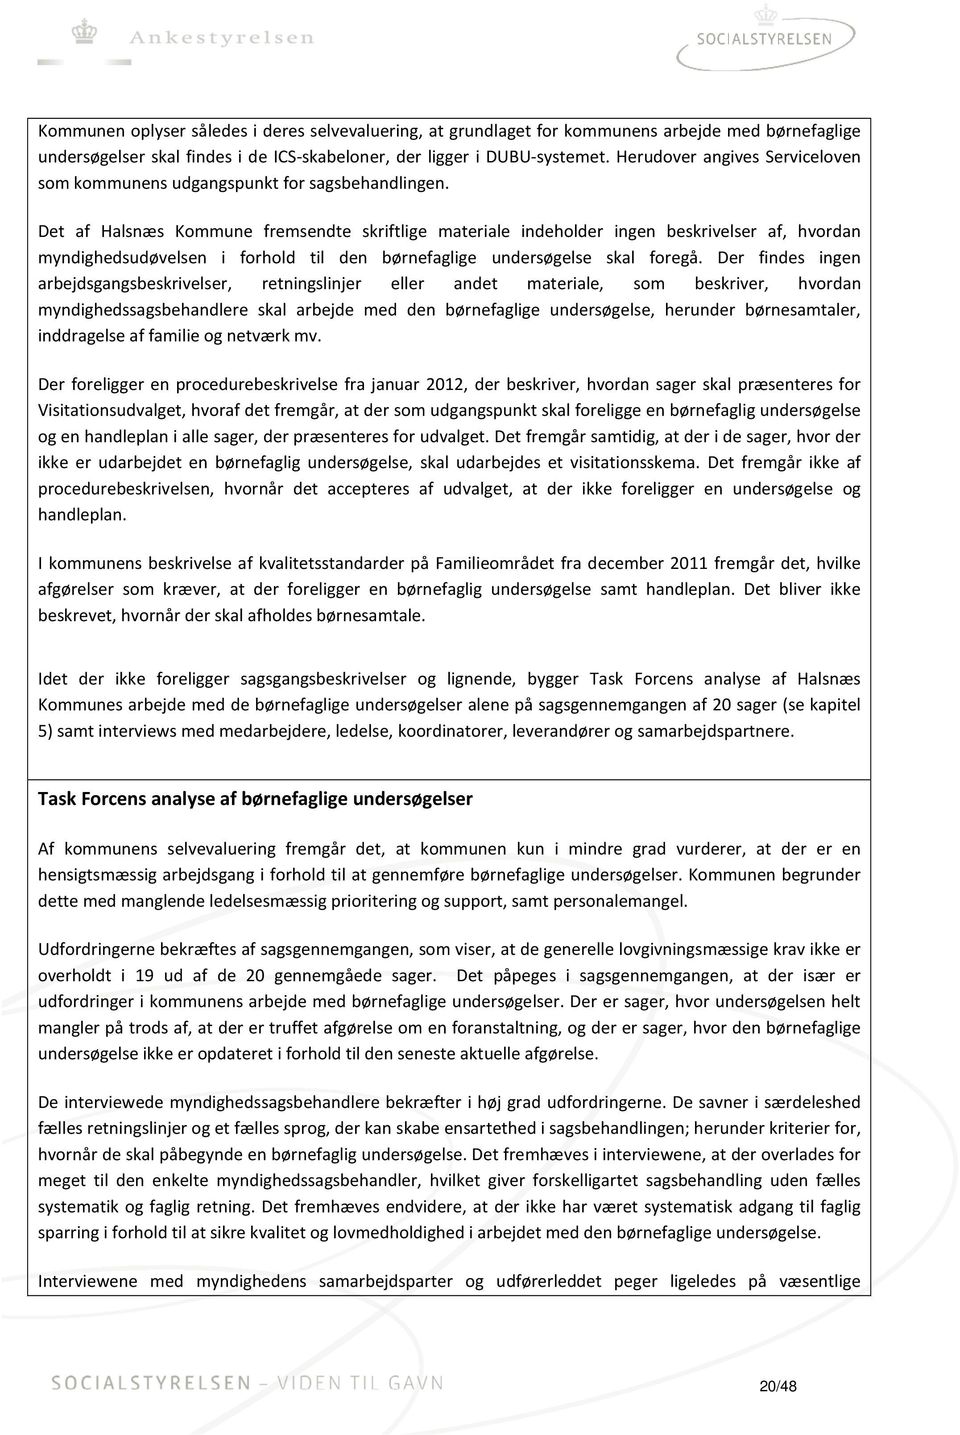 Det af Halsnæs Kommune fremsendte skriftlige materiale indeholder ingen beskrivelser af, hvordan myndighedsudøvelsen i forhold til den børnefaglige undersøgelse skal foregå.